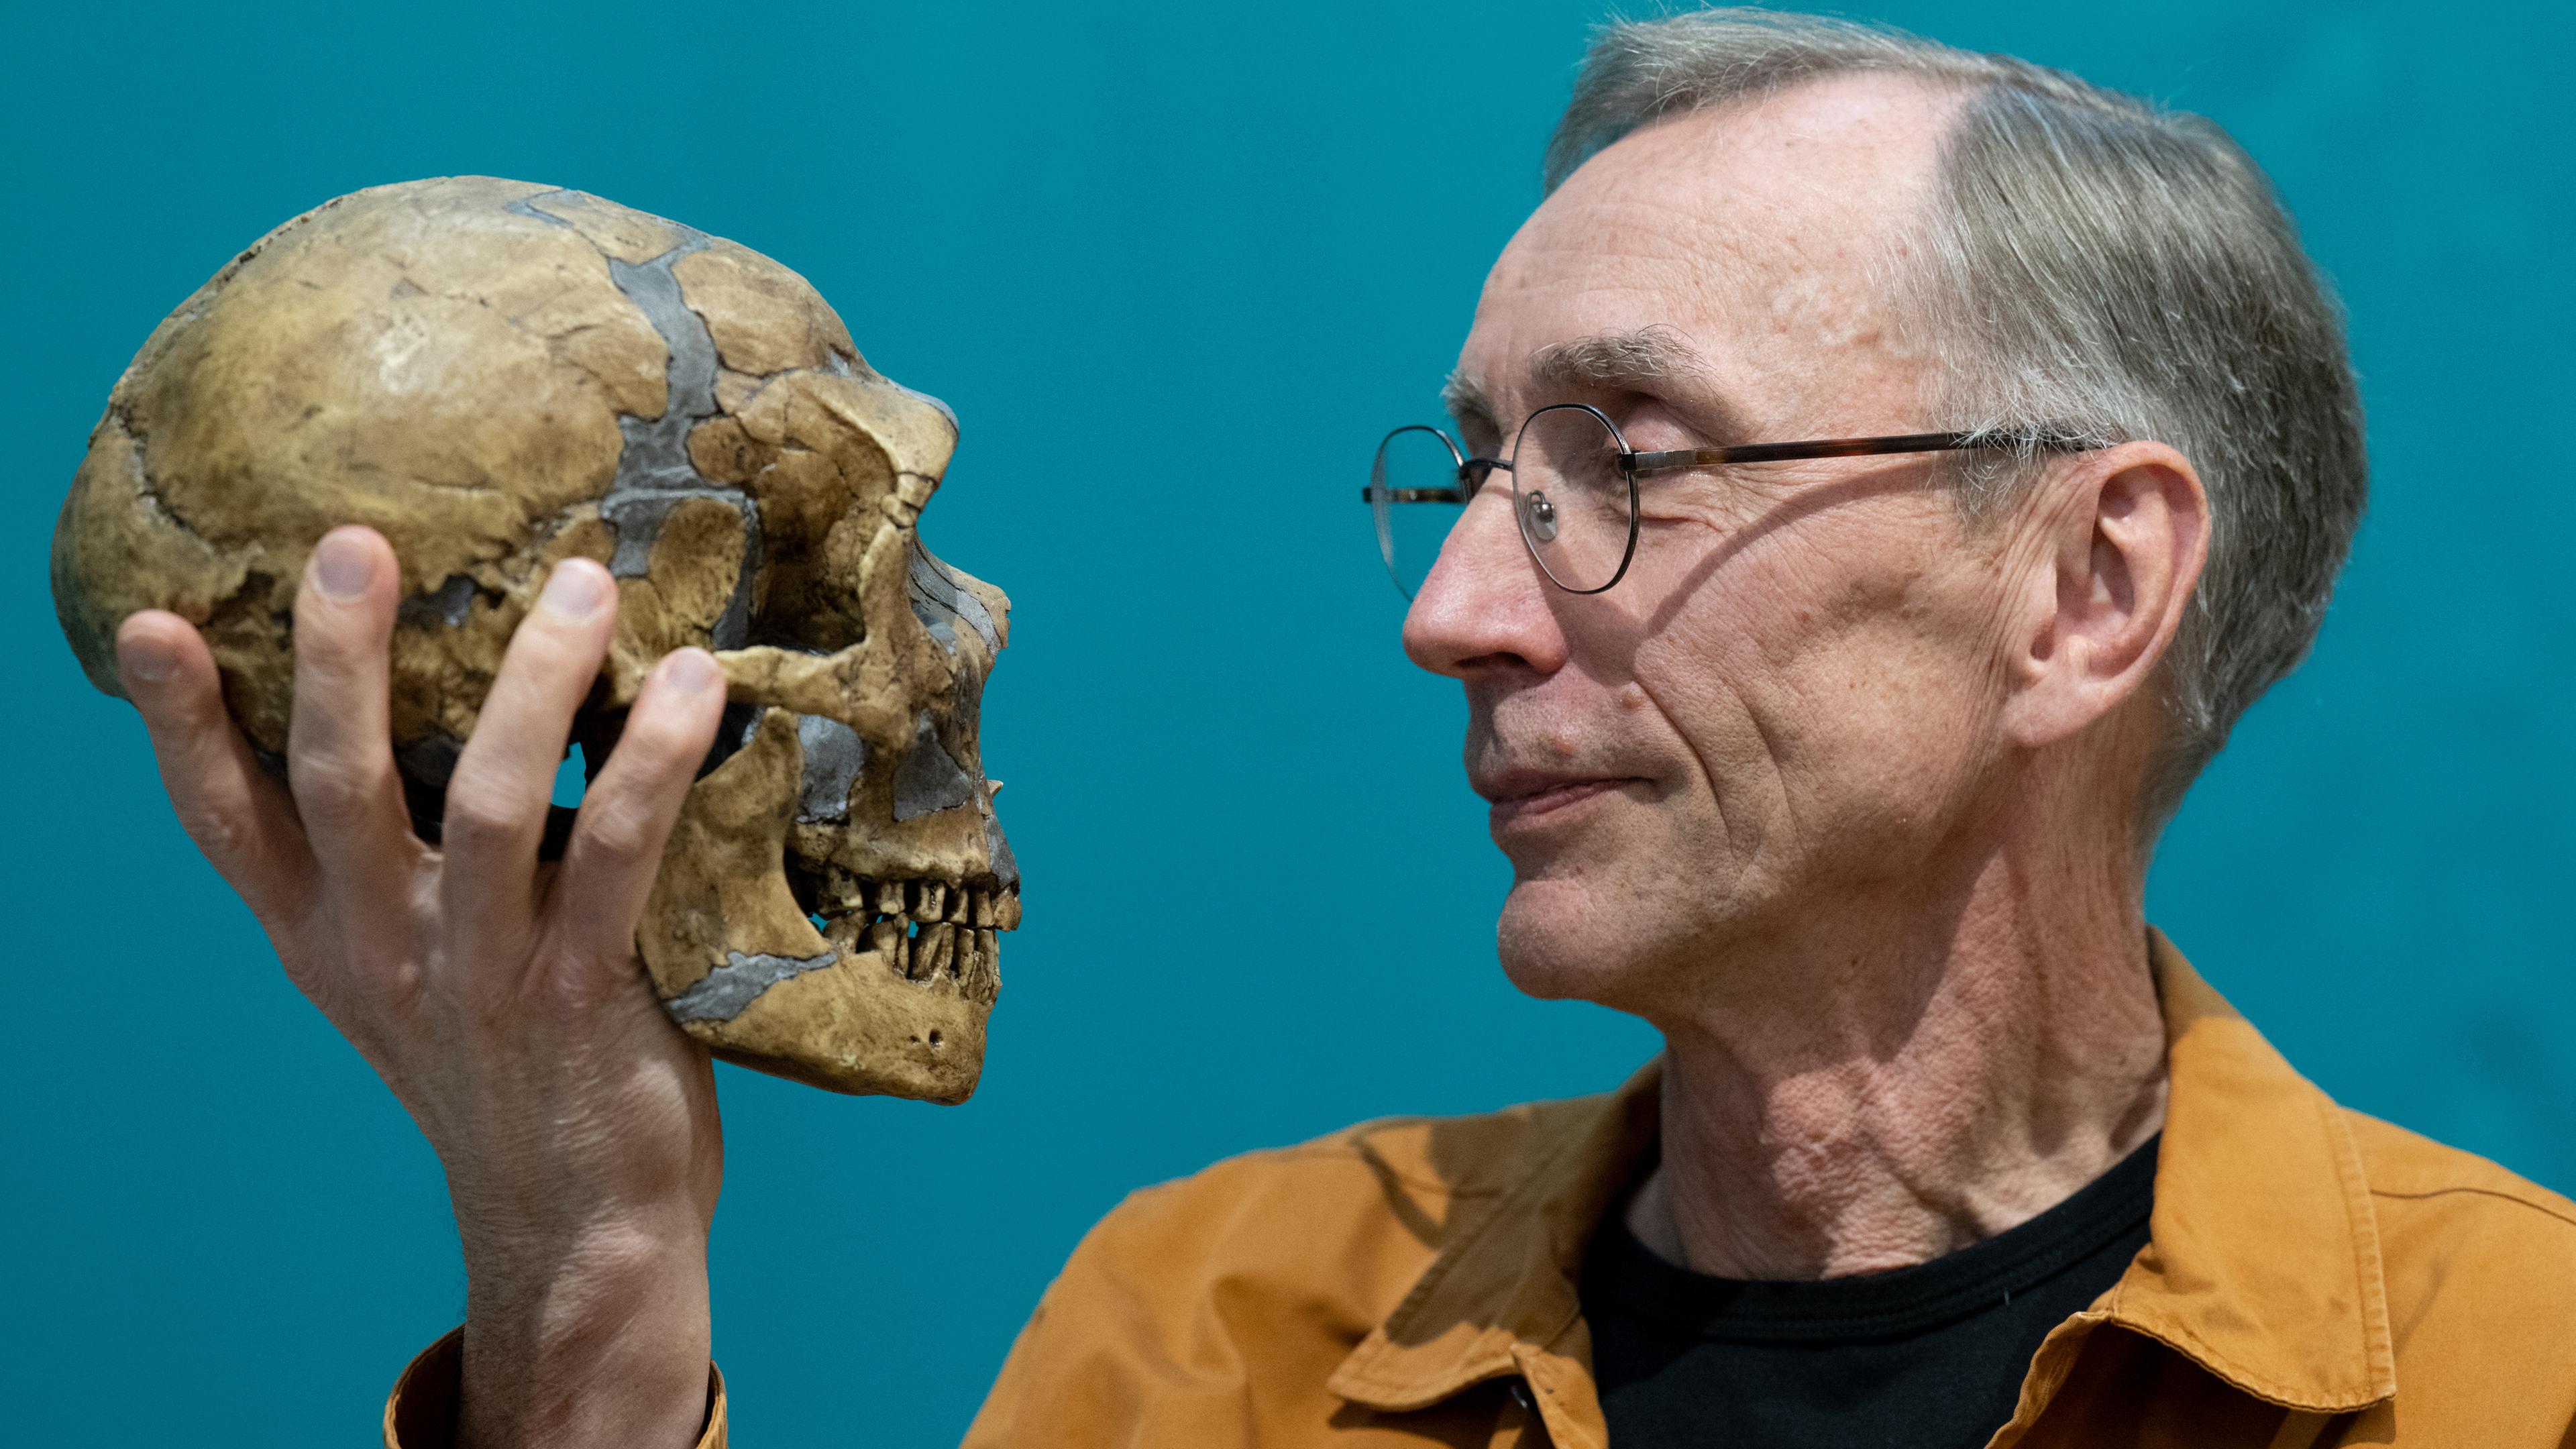 Der schwedische Evolutionsforscher Svante Pääbo hält im Max-Planck-Institut für evolutionäre Anthropologie in Leipzig die Nachbildung eines Neandertaler-Schädels in der Hand.